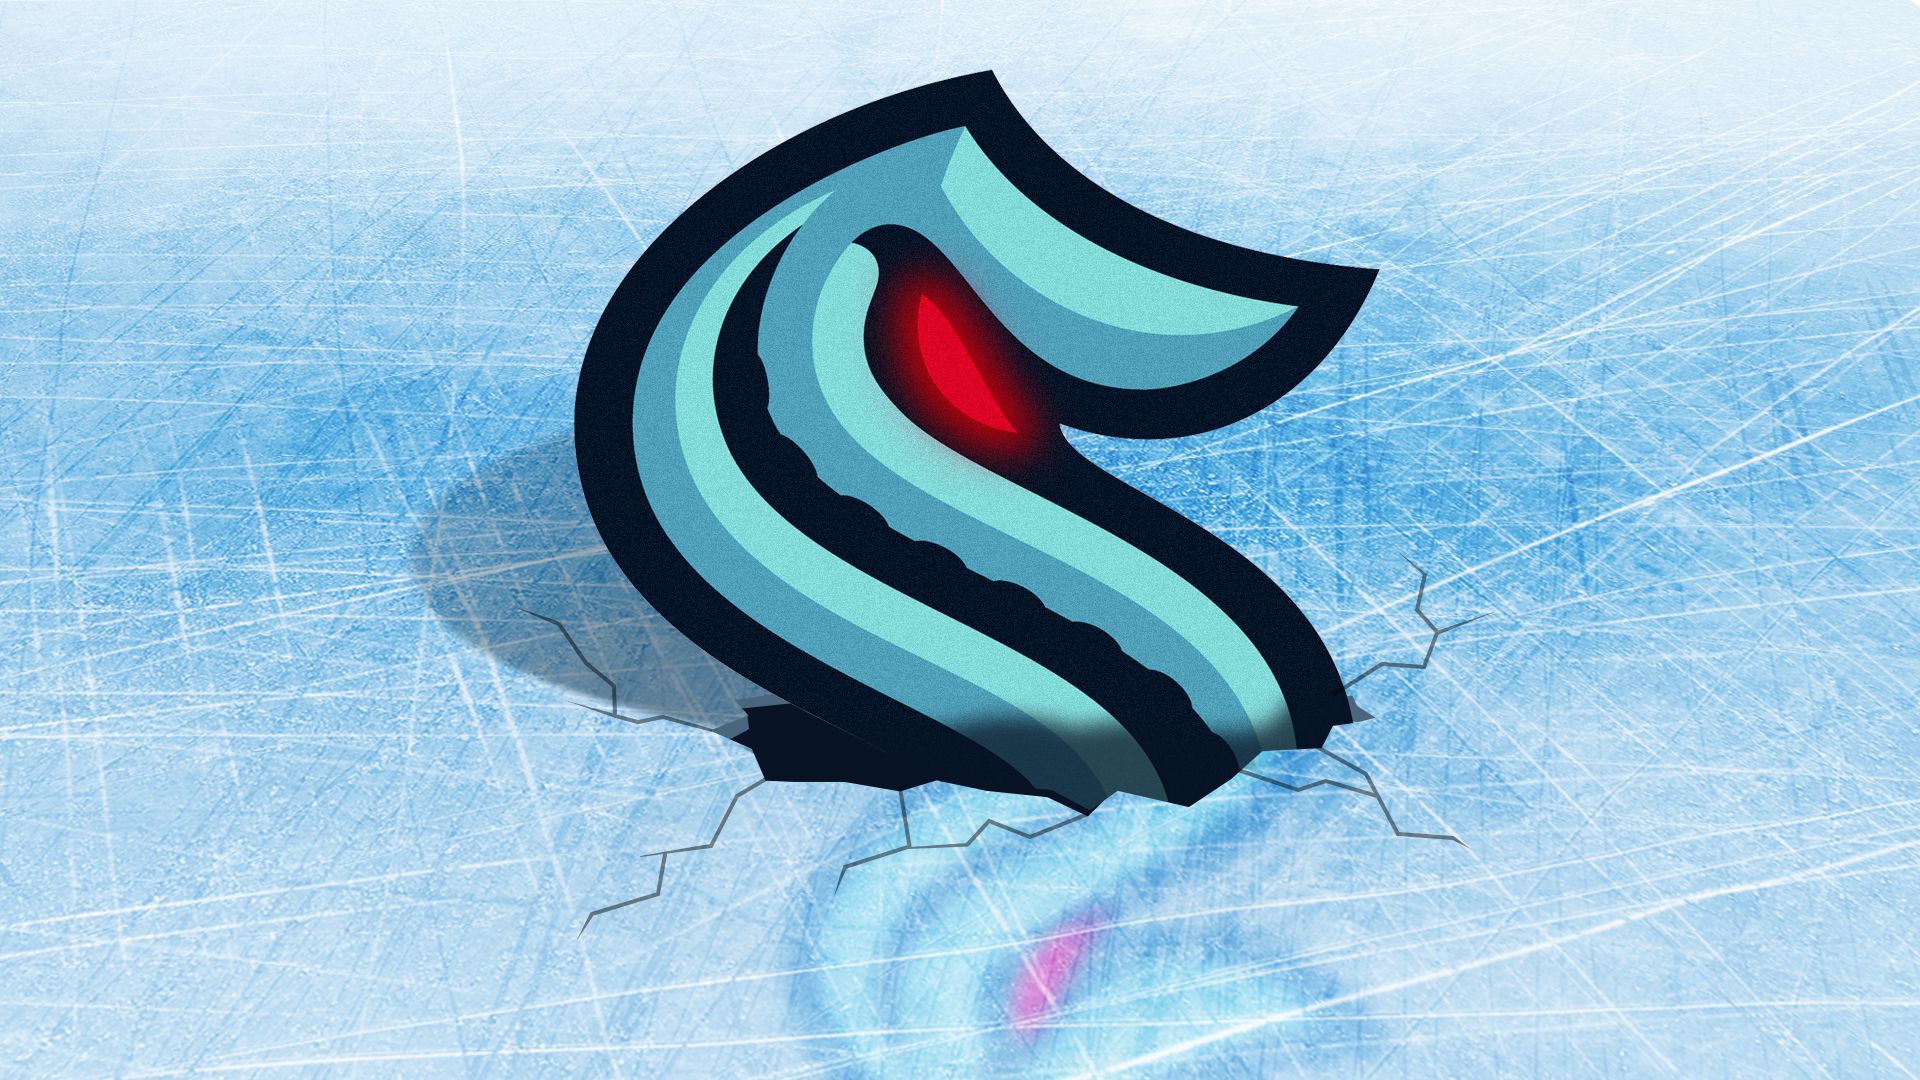 Illustration of the Seattle Kraken logo surfacing through ice